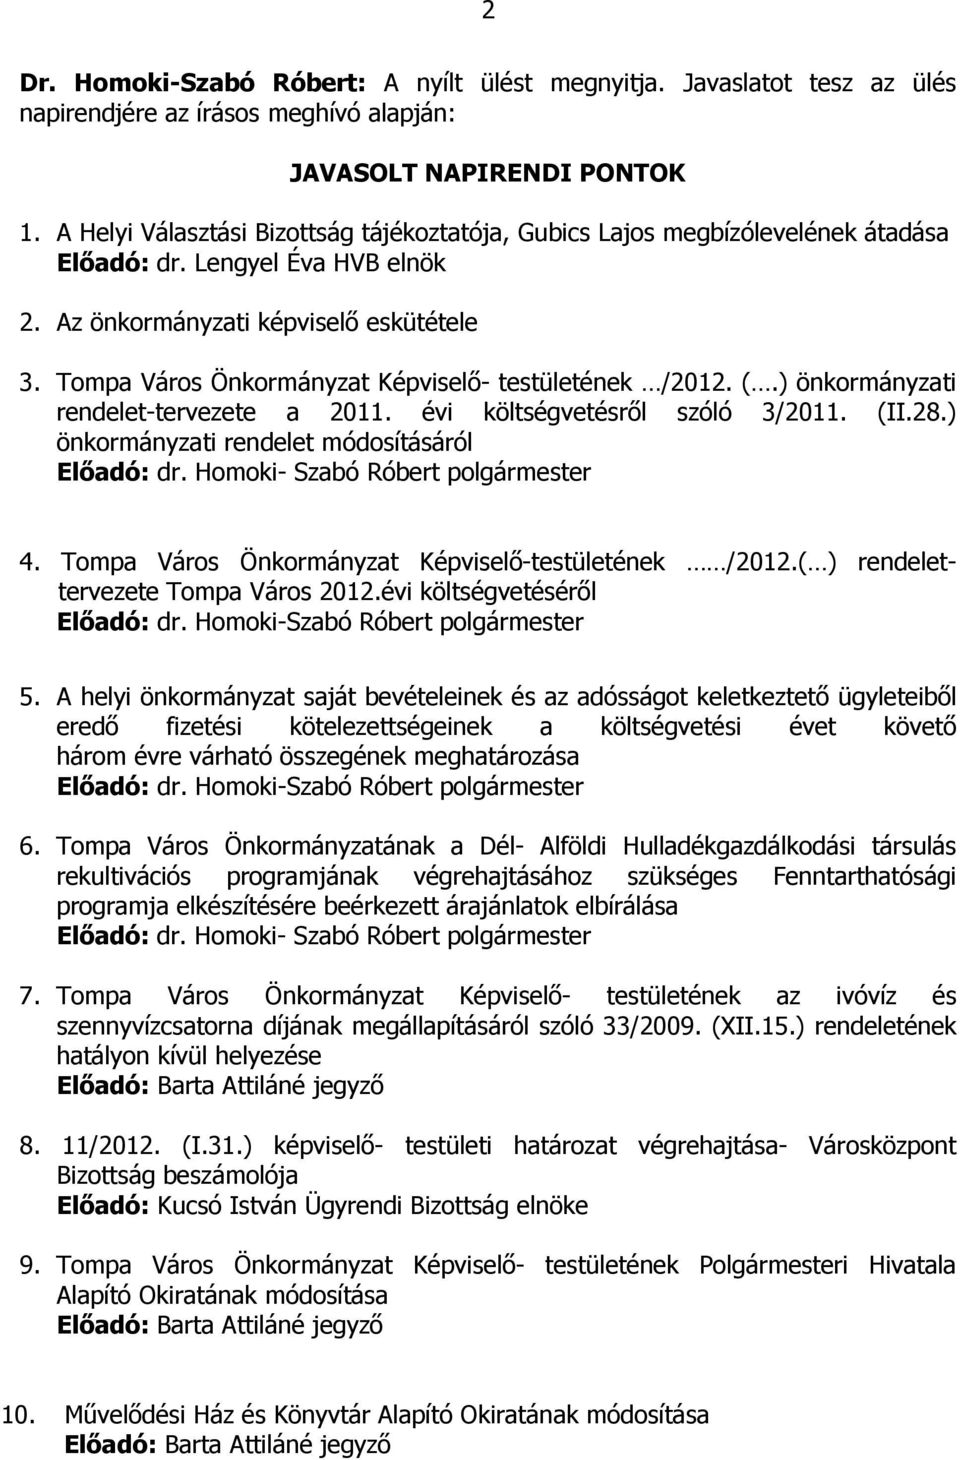 Tompa Város Önkormányzat Képviselő- testületének /2012. (.) önkormányzati rendelet-tervezete a 2011. évi költségvetésről szóló 3/2011. (II.28.) önkormányzati rendelet módosításáról Előadó: dr.